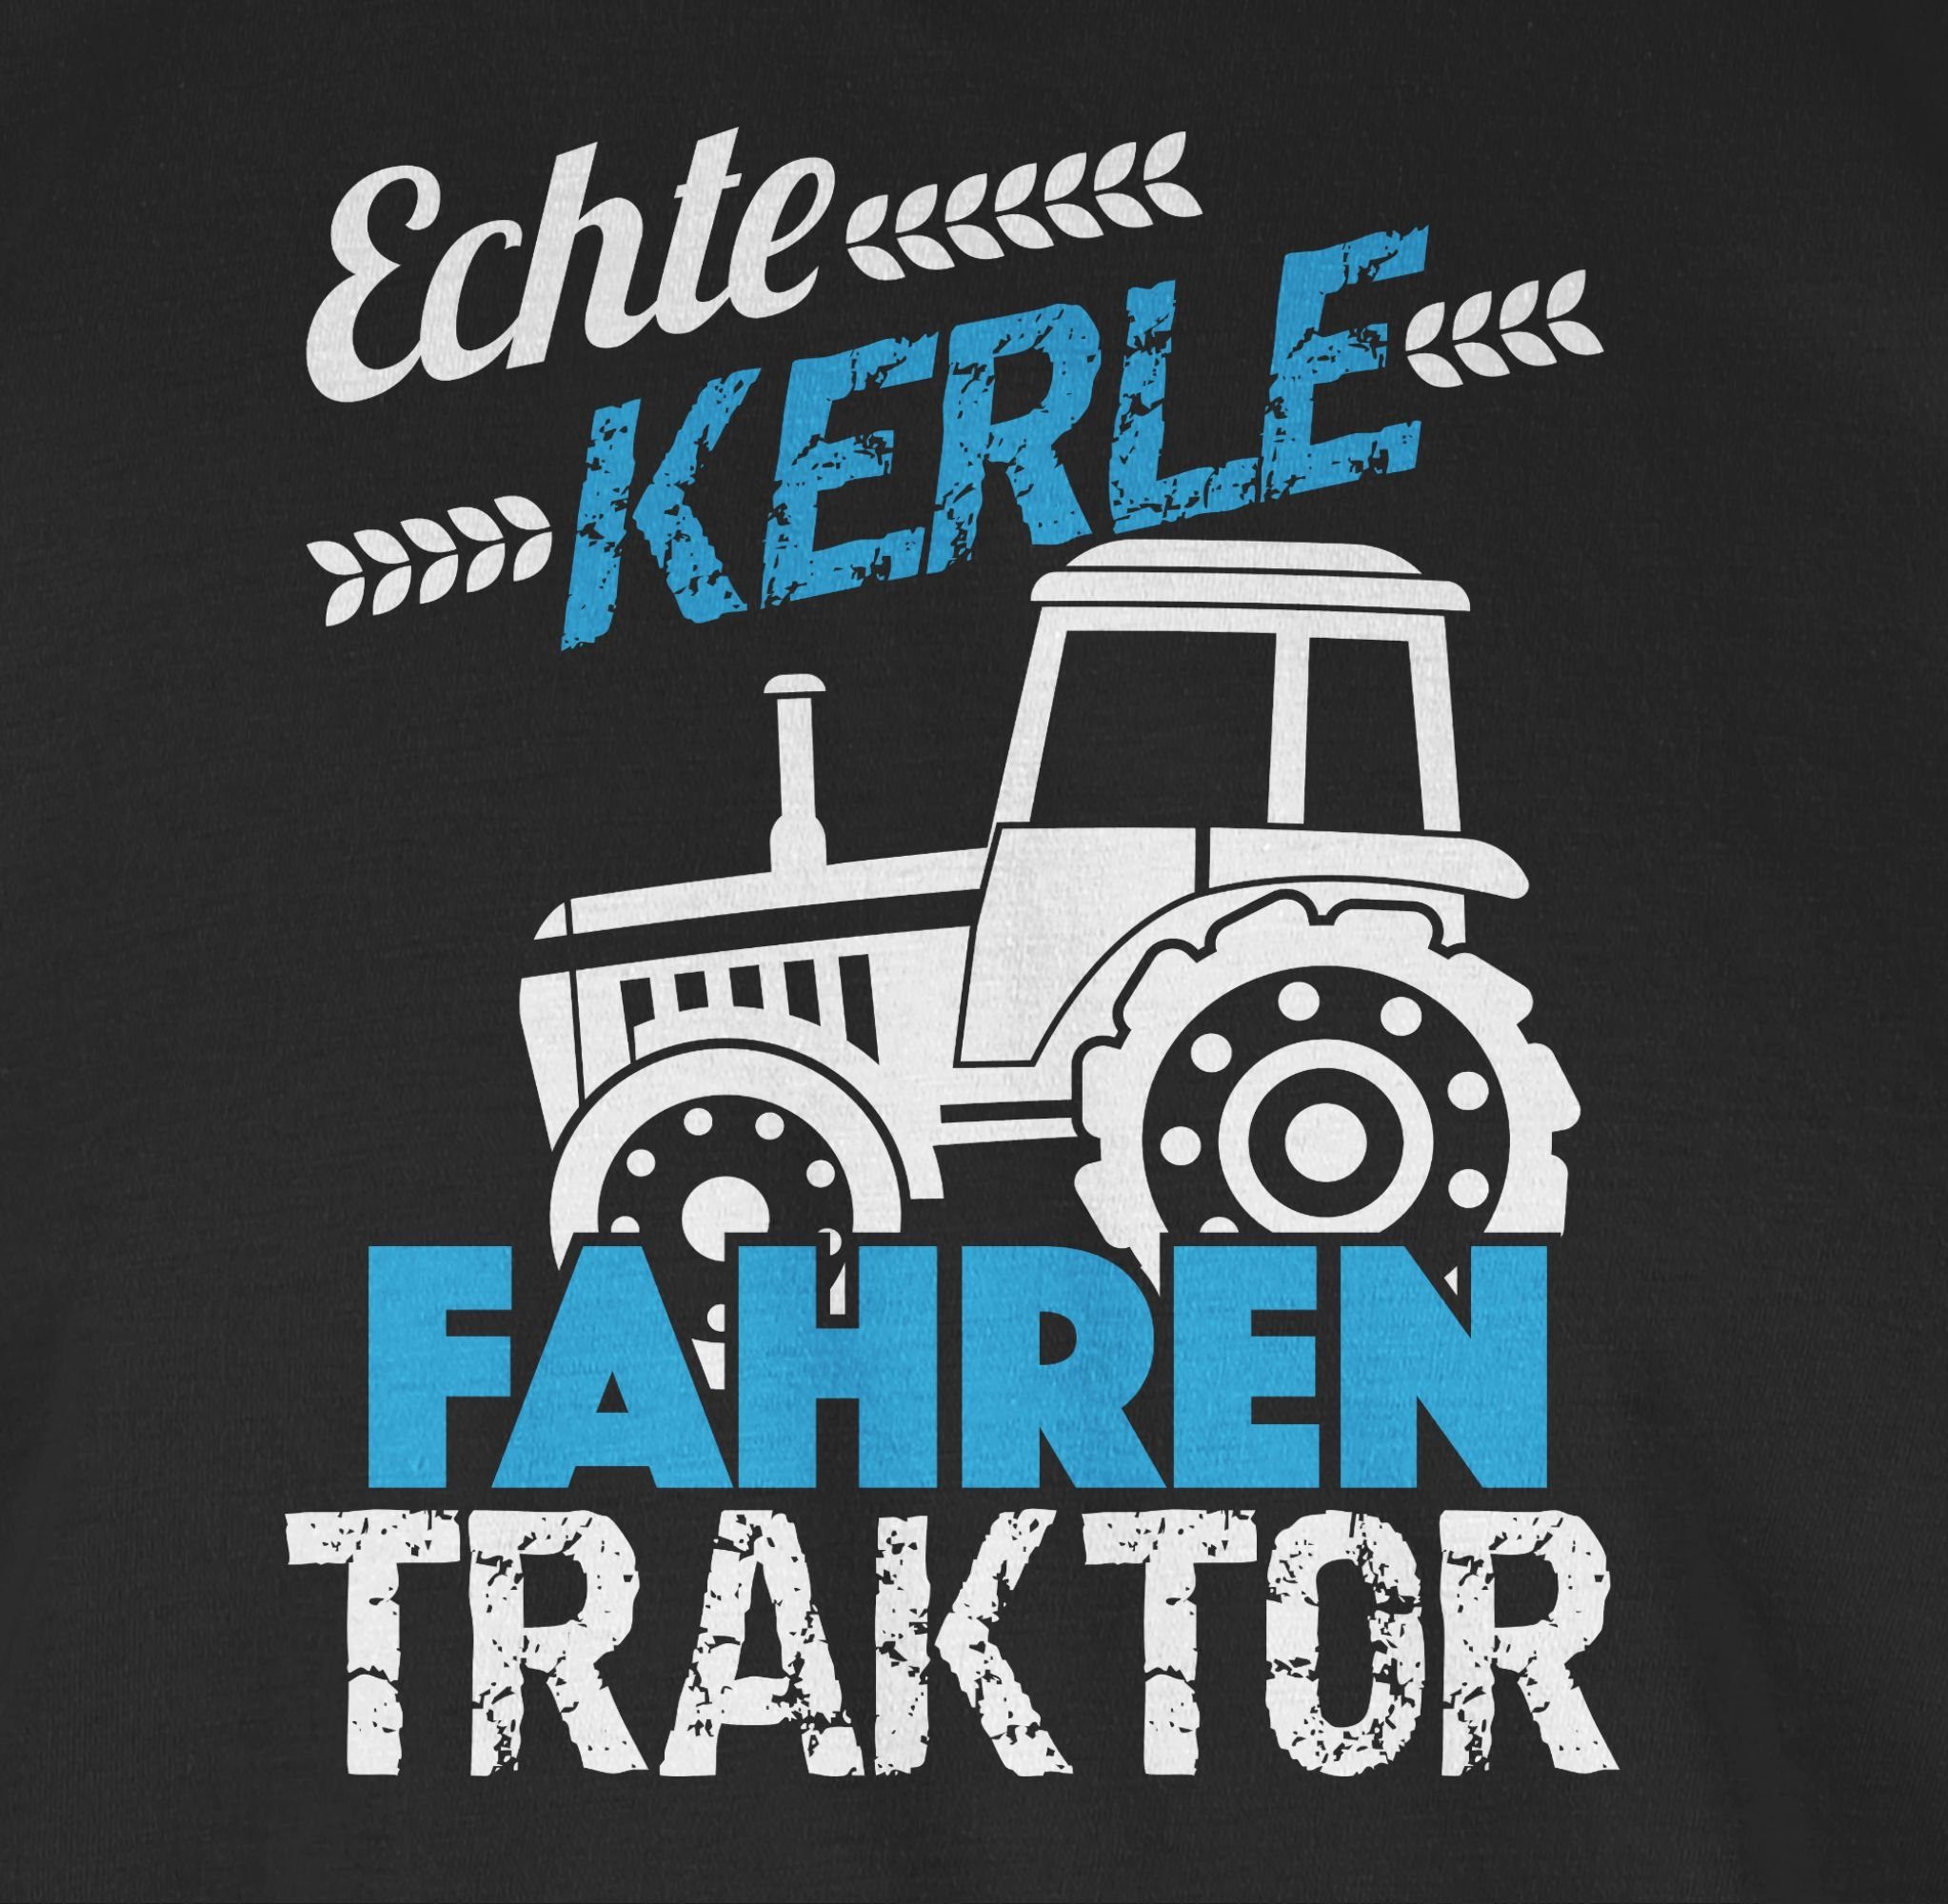 Shirtracer T-Shirt Echte Kerle Traktor Schwarz fahren 01 Traktor